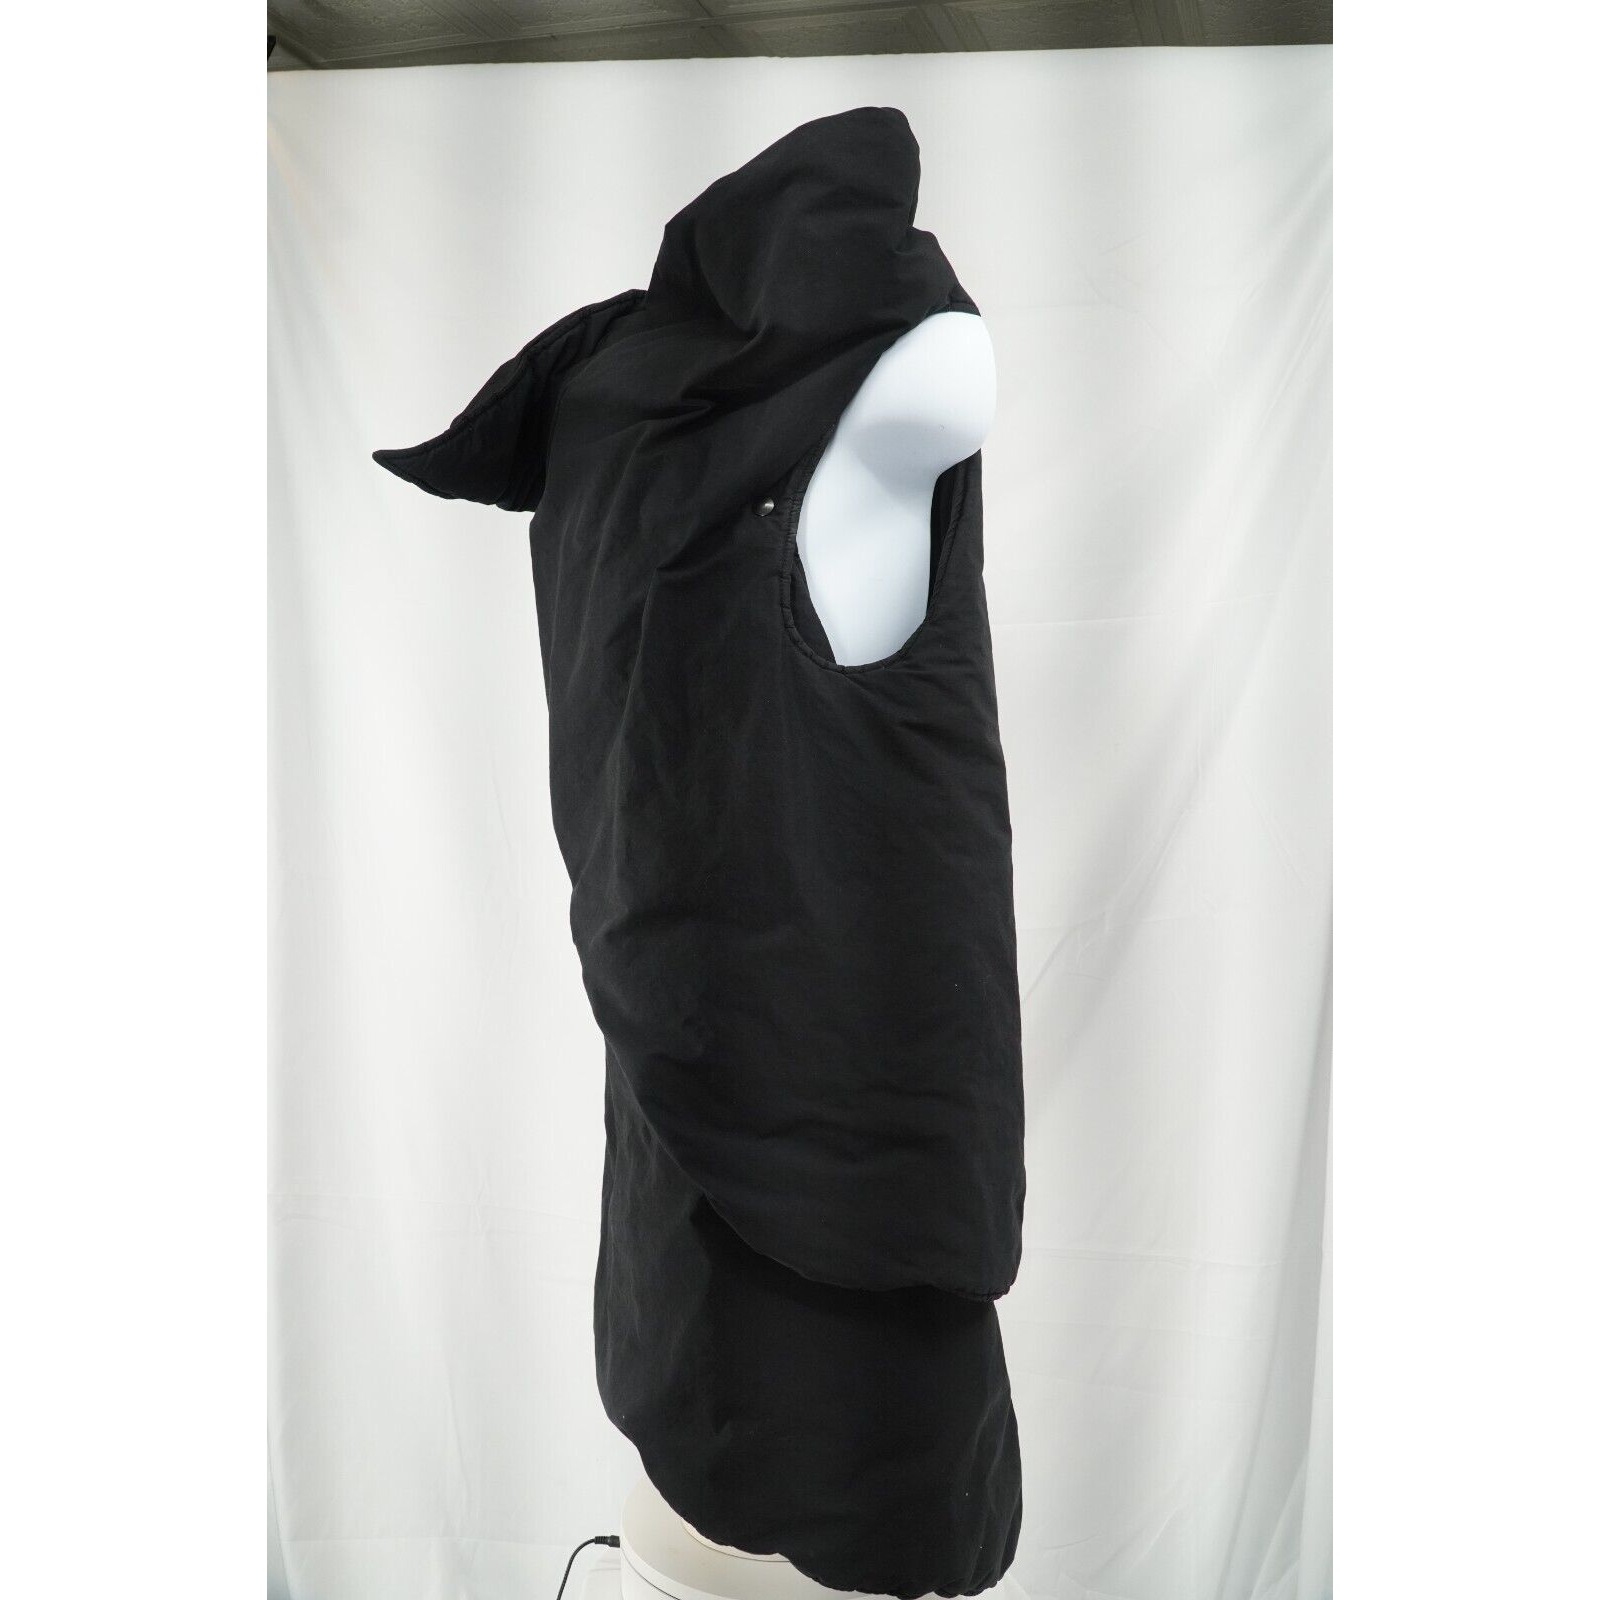 Sphinx Stole Jacket Black Wrap Asymmetric Runway-Esque - 7